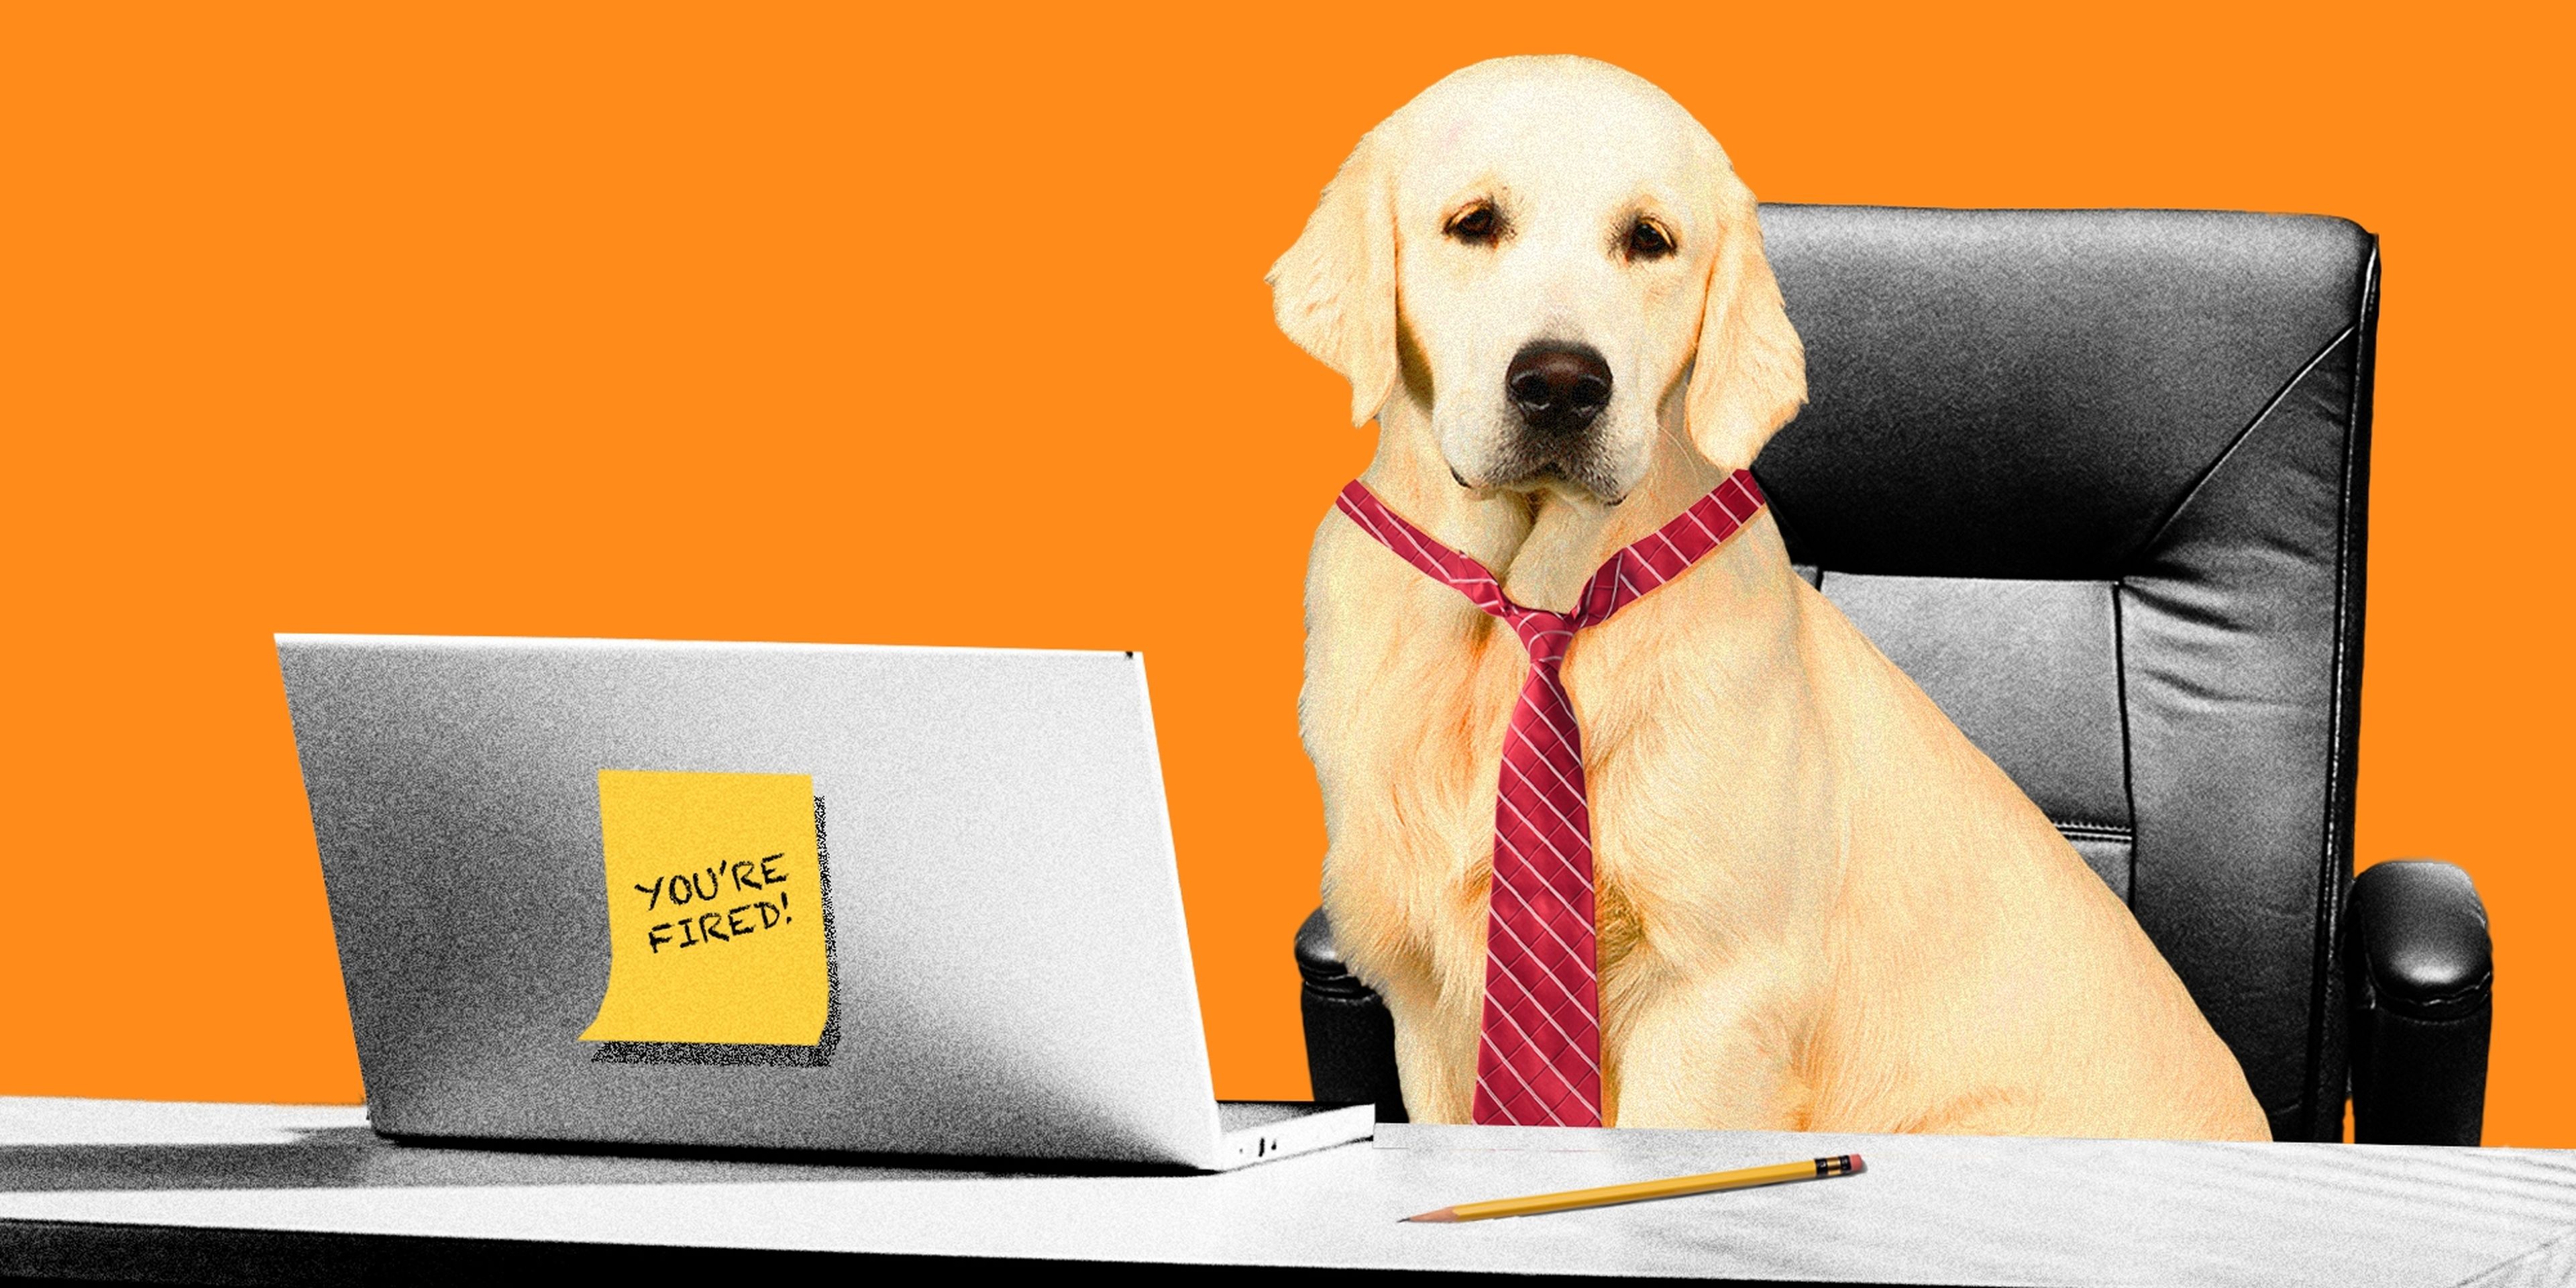 Ilustración perro jefe despedido trabajo